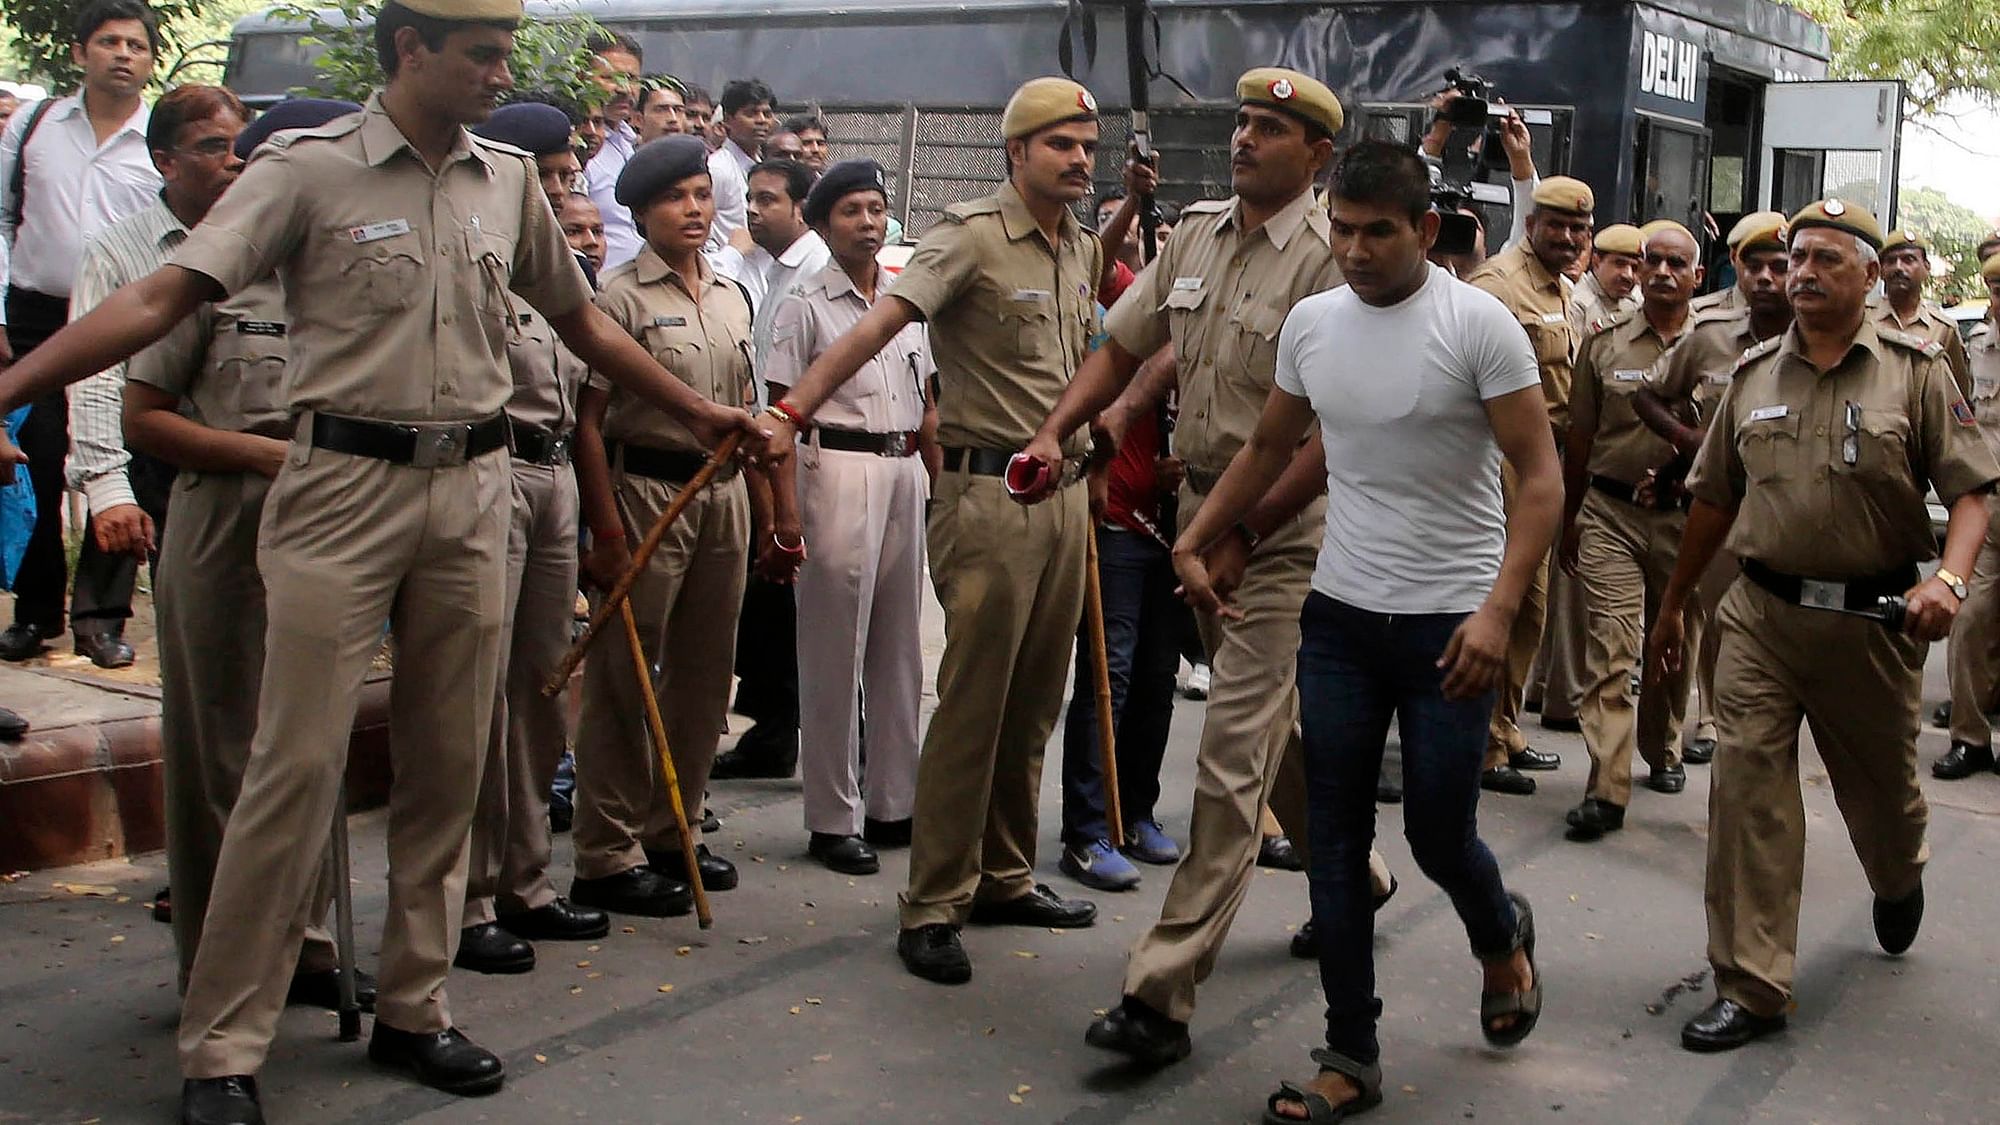 

<b>सफेद टी-शर्ट में निर्भया कांड का गुनहगार विनय शर्मा (फाइल फोटो: रॉयटर्स)</b>